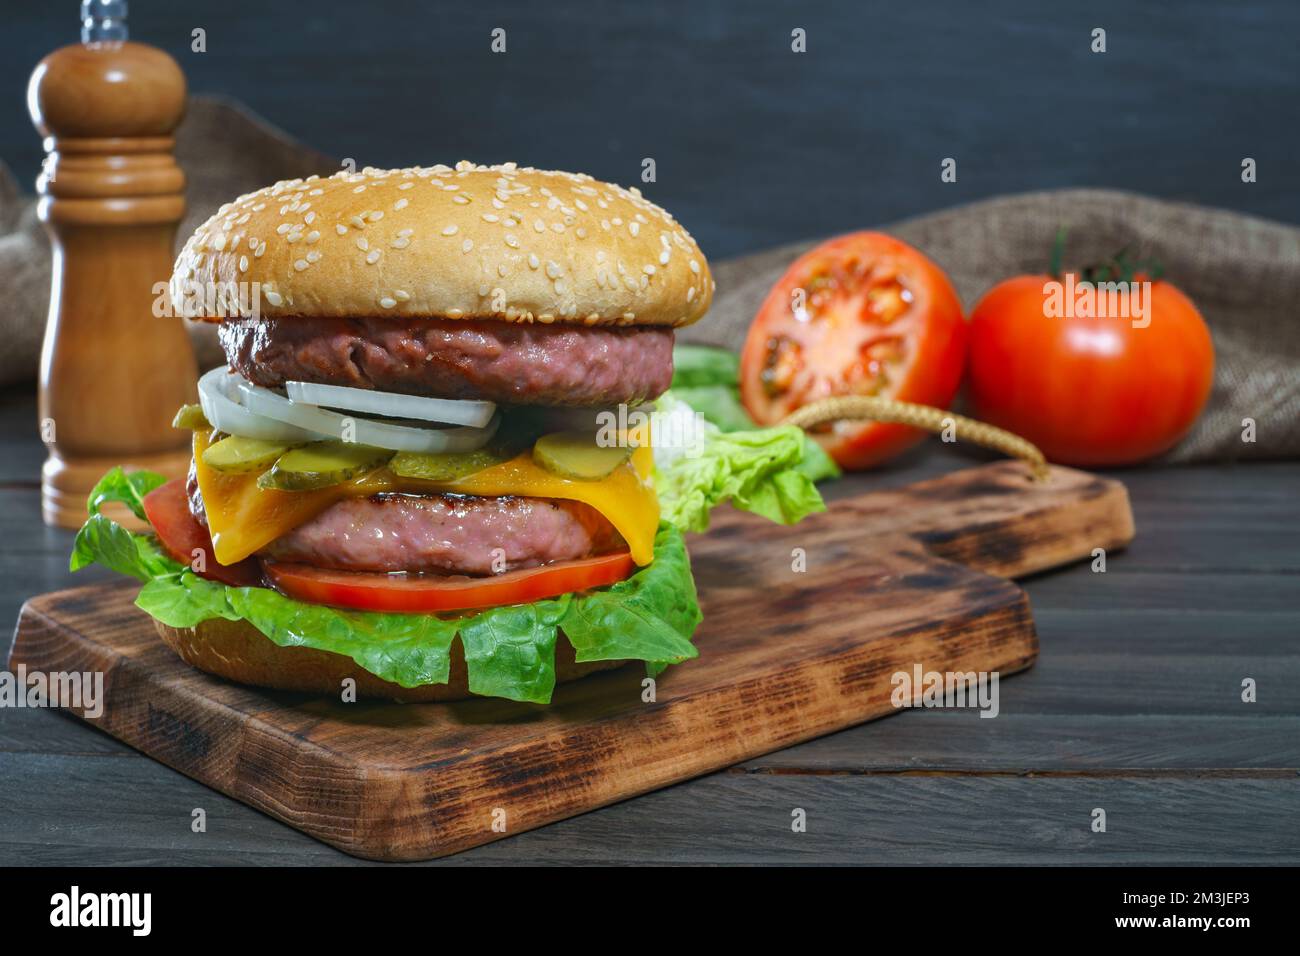 délicieux hamburger complet sur une planche de bois et des sauces Banque D'Images